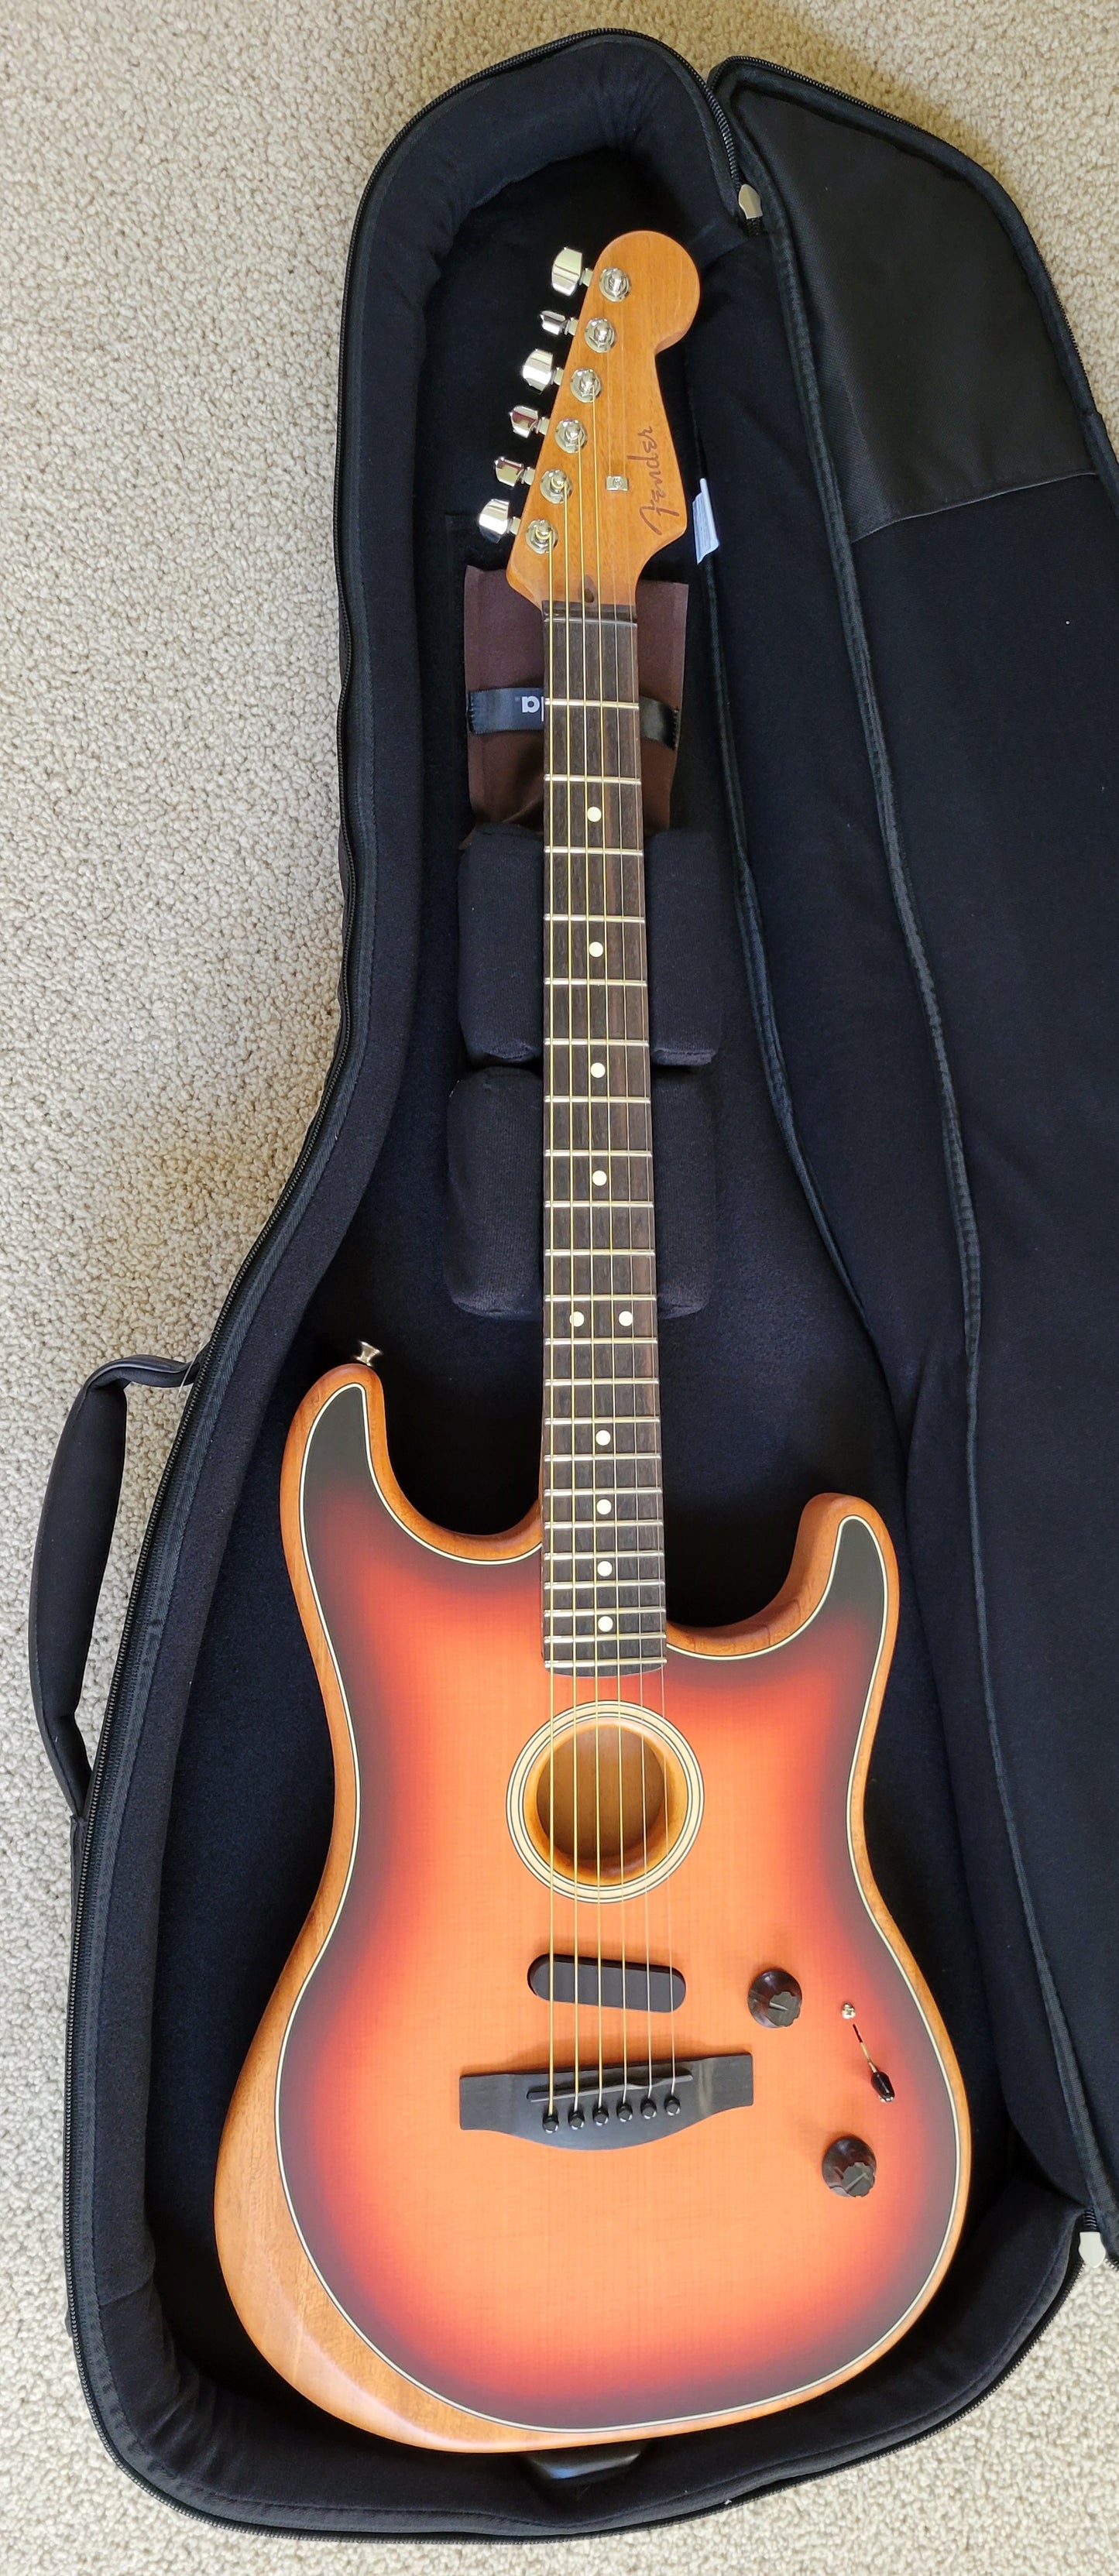 Fender American Acoustasonic Stratocaster Guitar, 3-Color Sunburst, New Fender Gig Bag